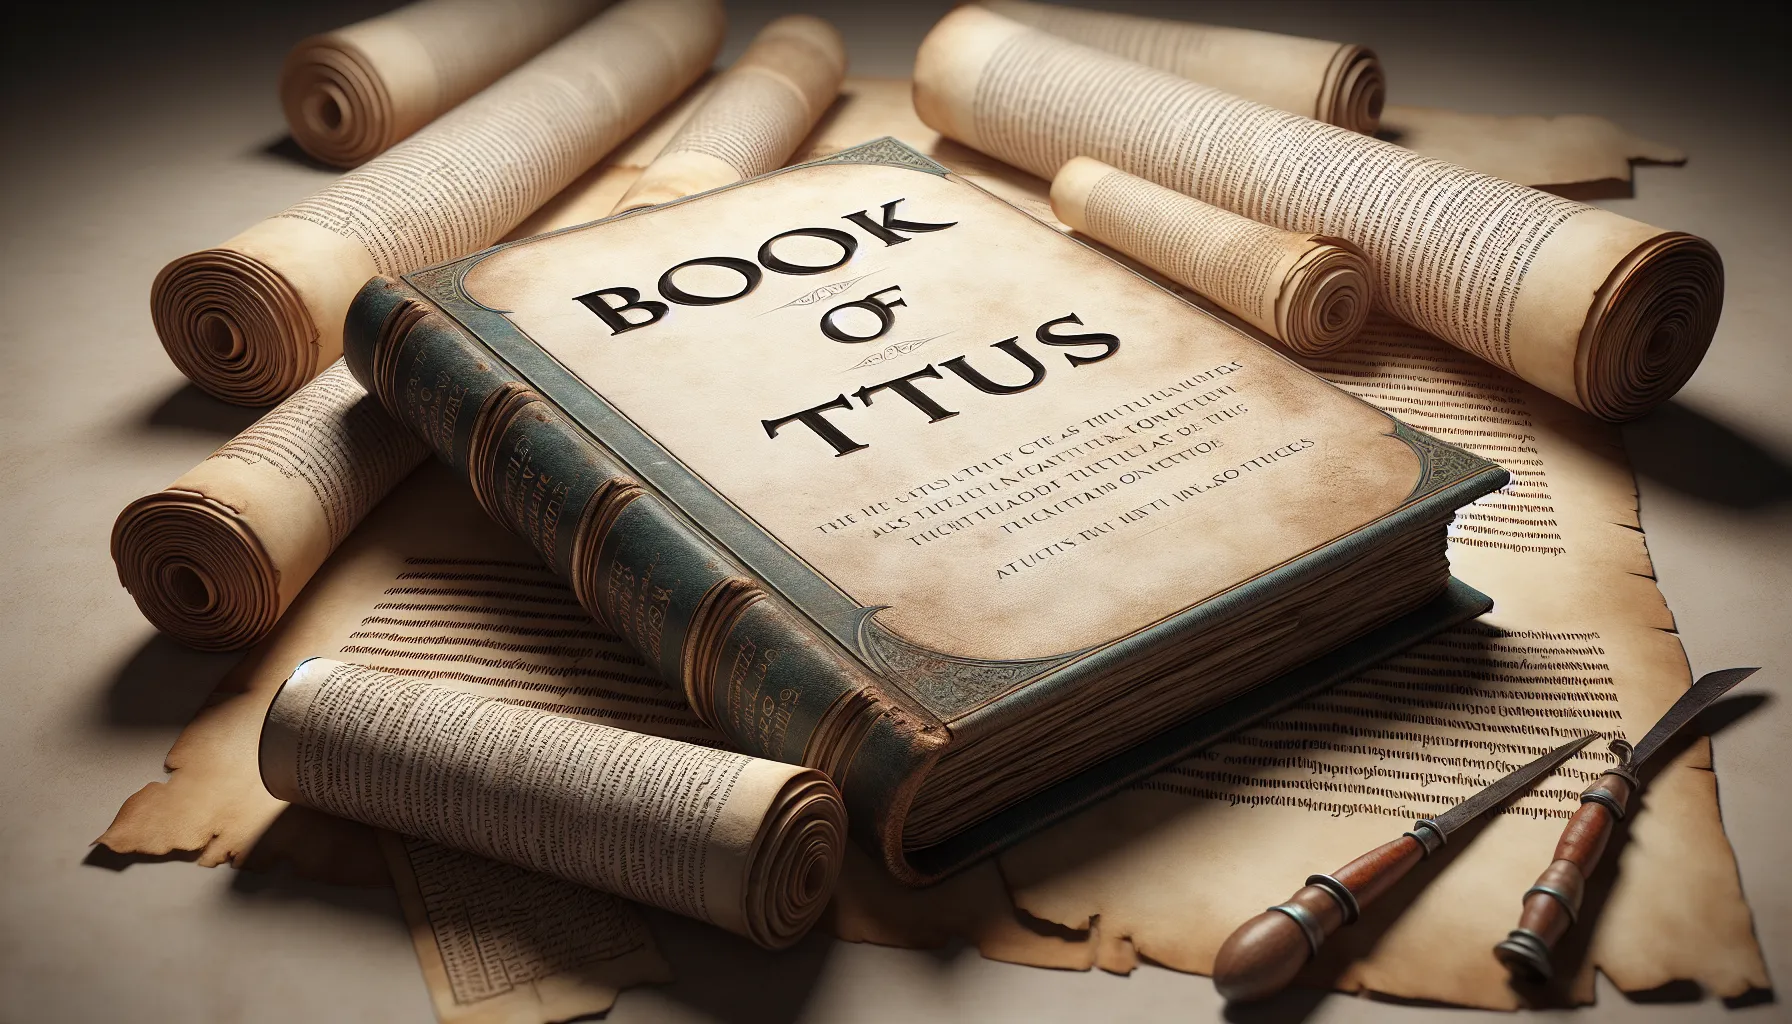 Imagen de un libro abierto con el título Libro de Tito rodeado de pergaminos antiguos.'